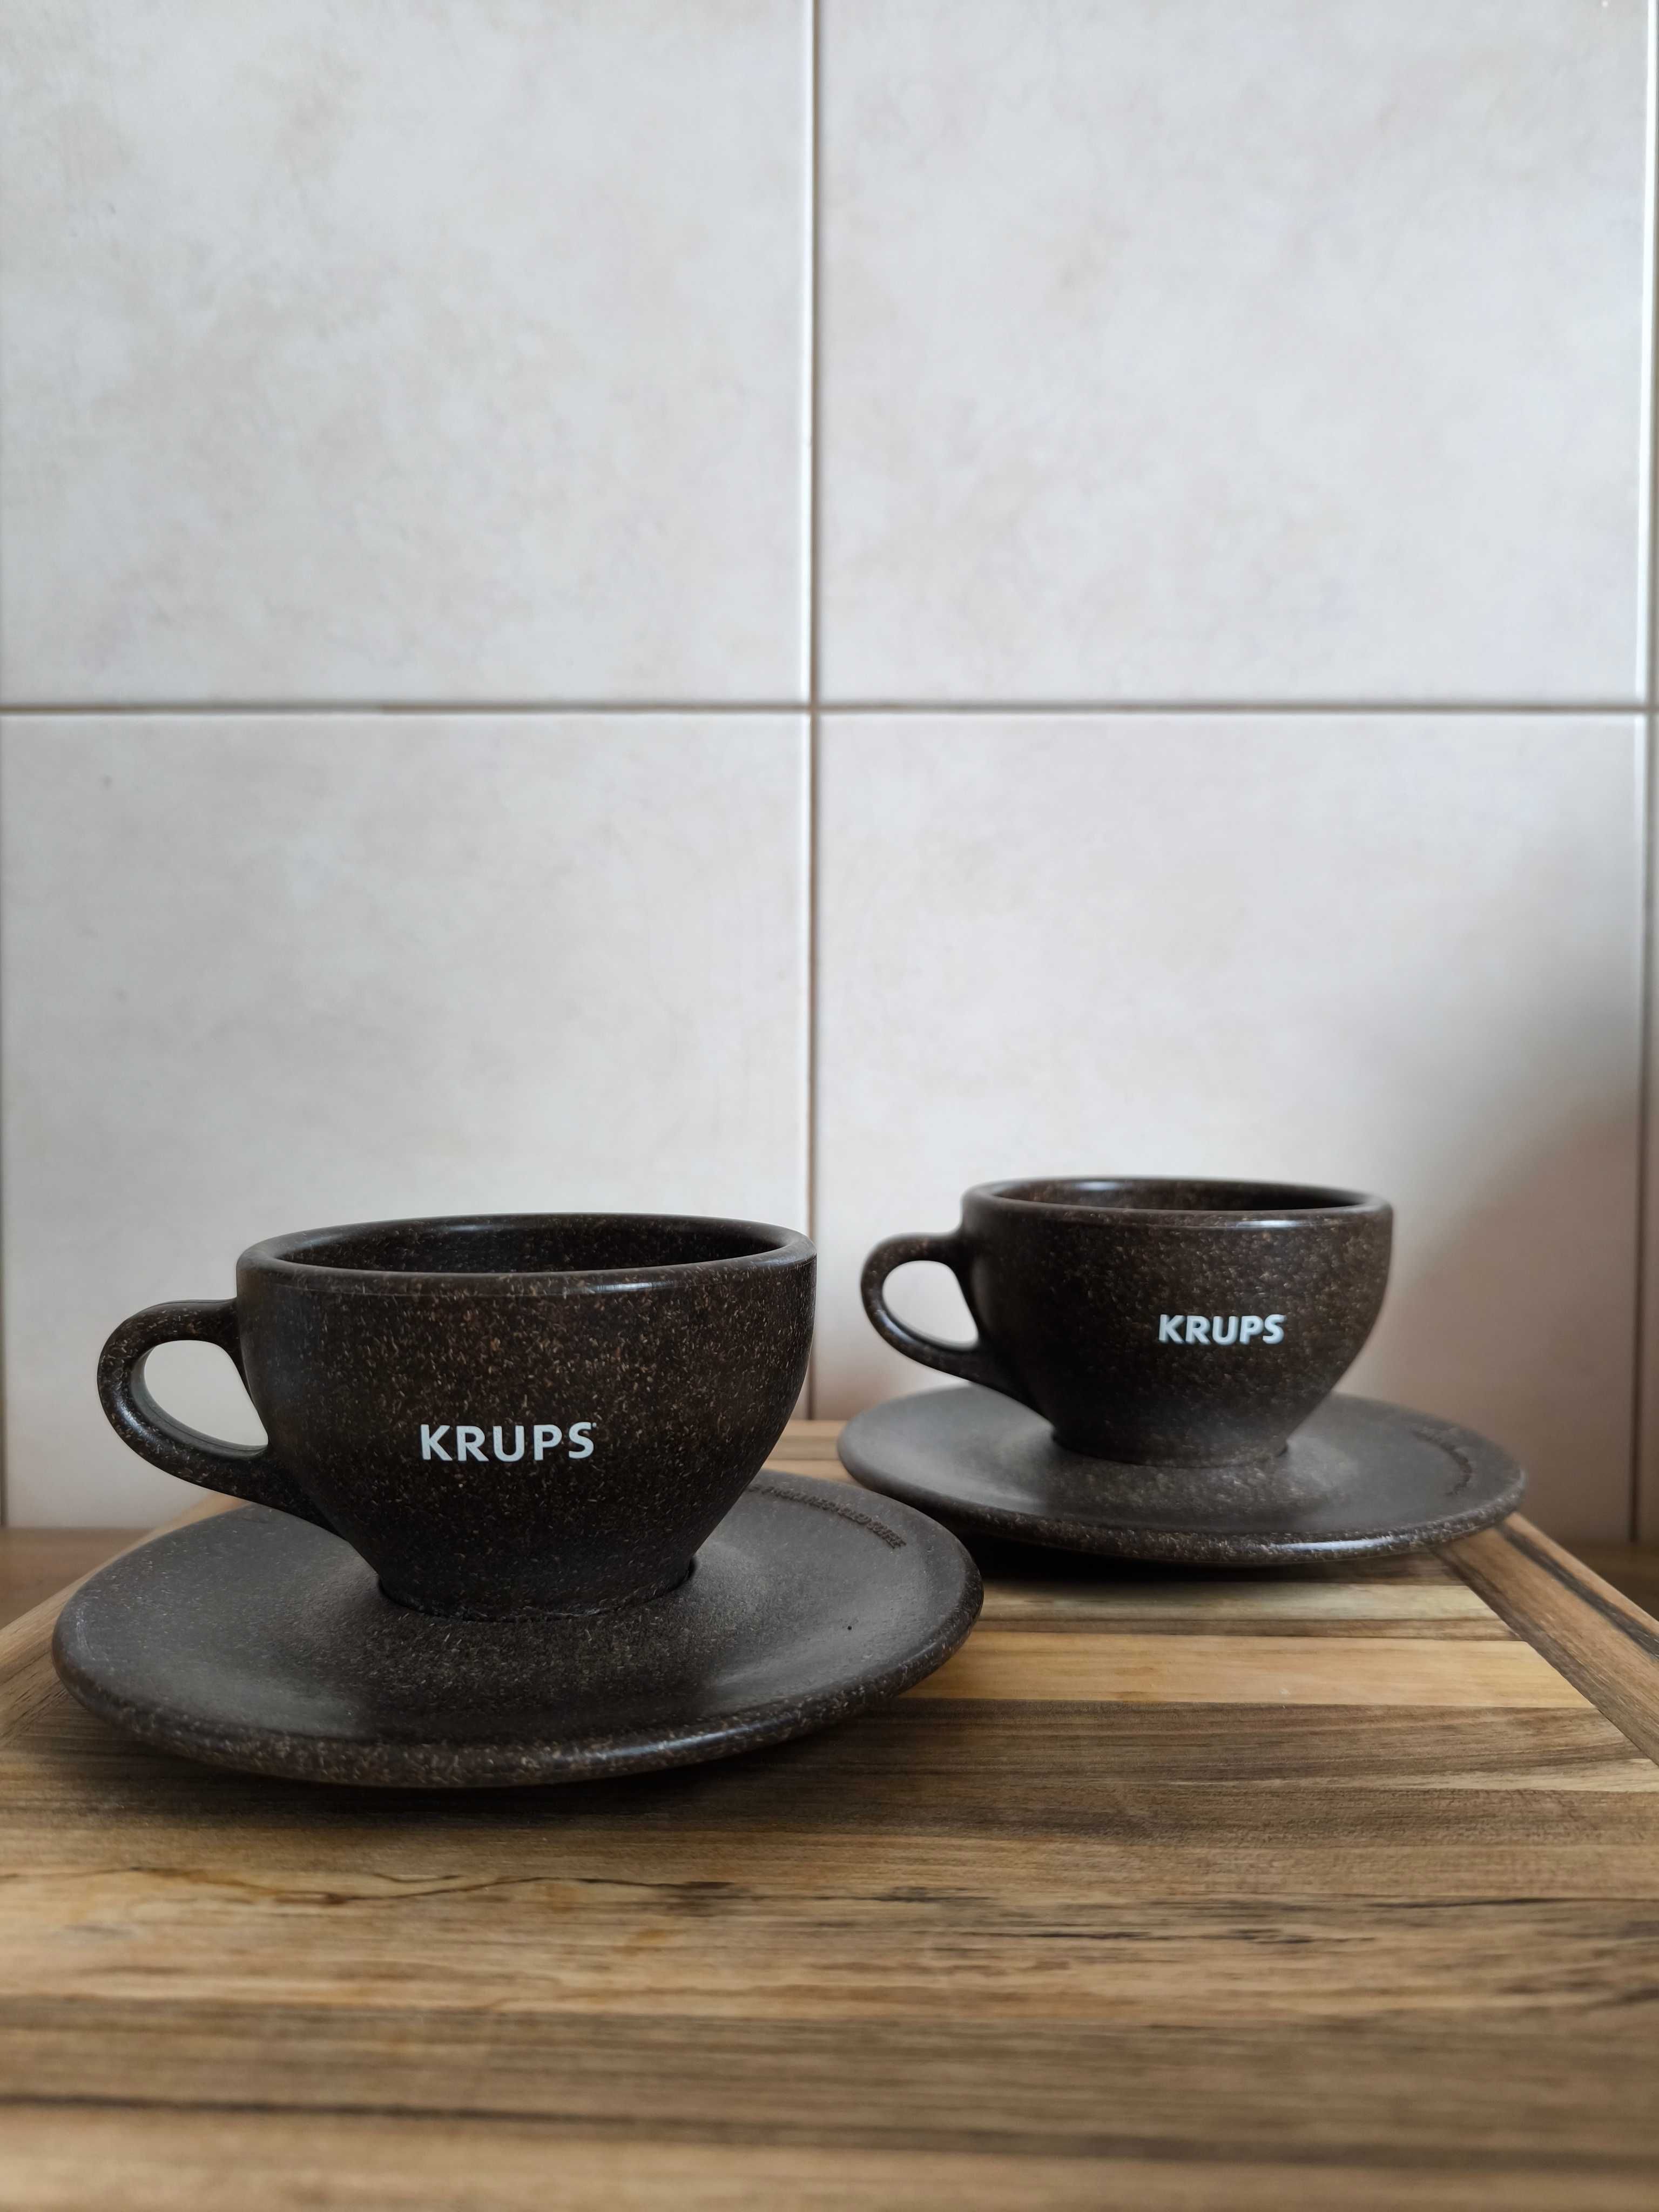 2x filiżanka Krups ze spodkiem wykonana z kawy